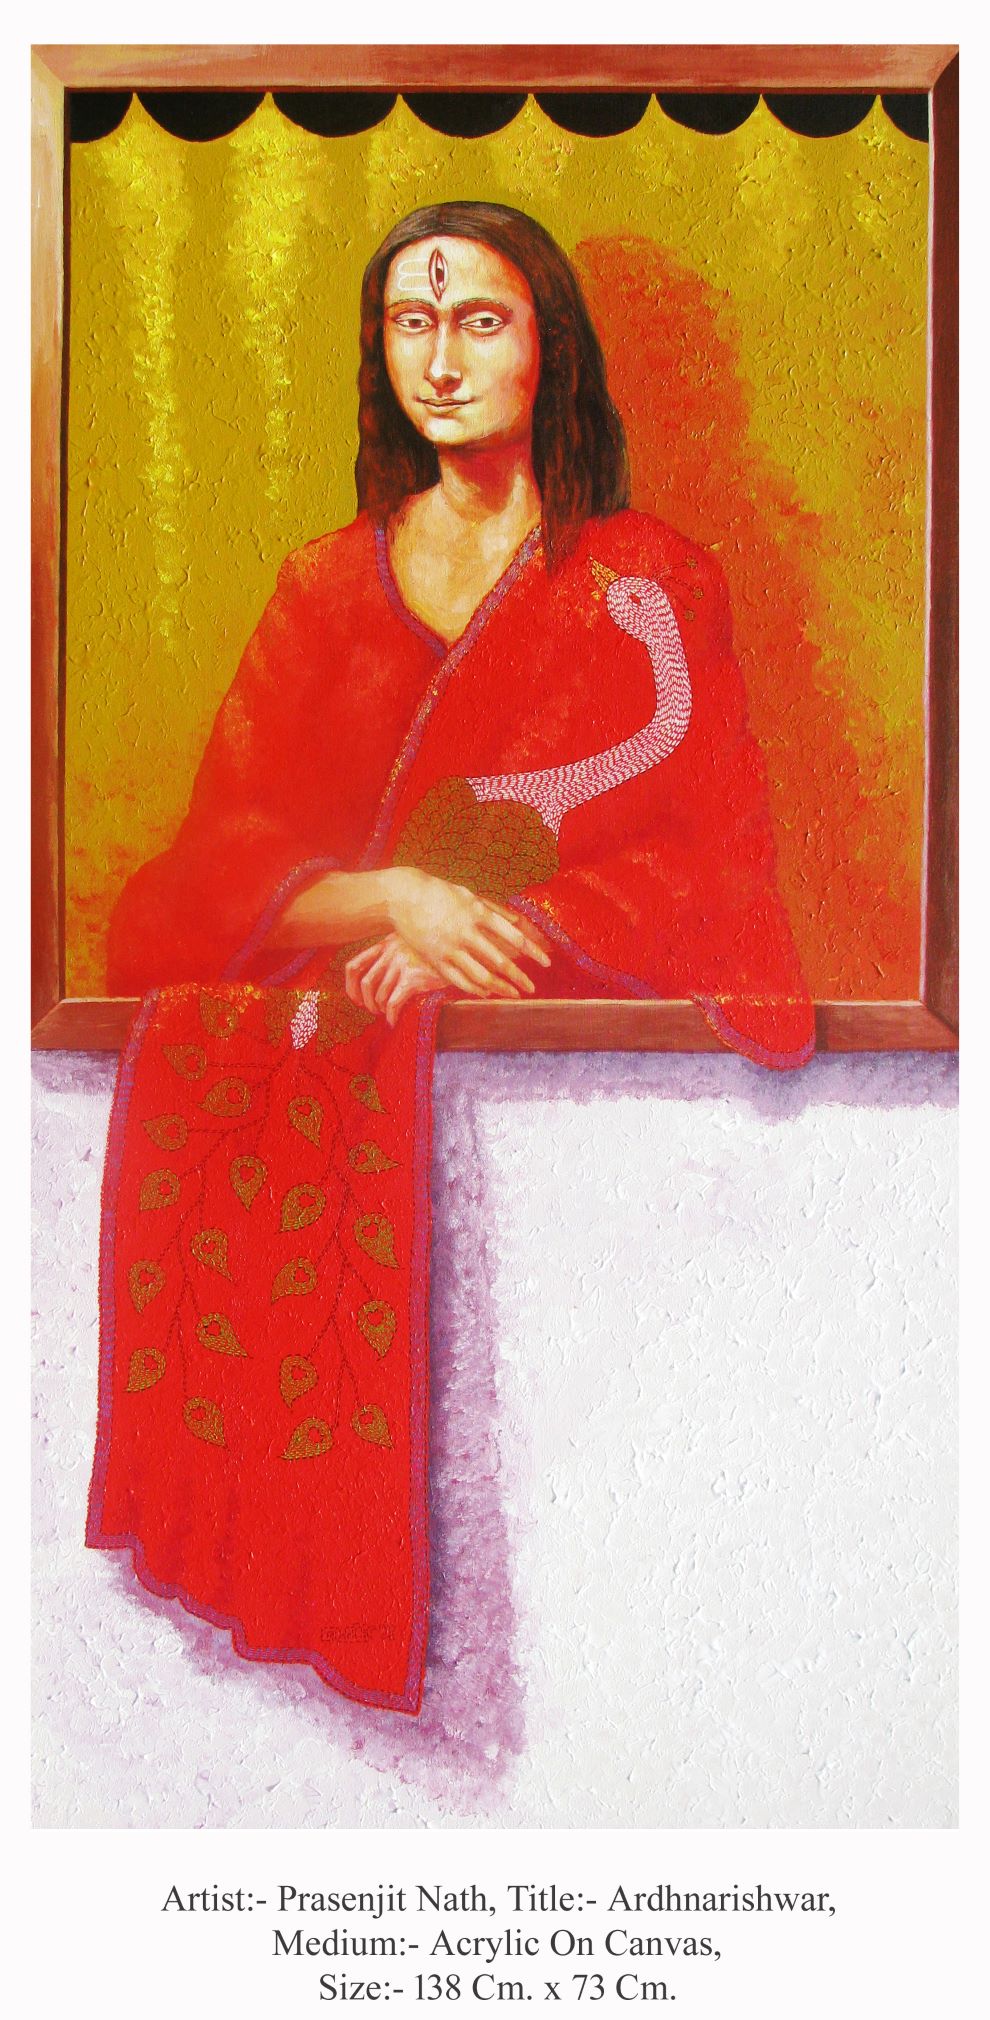 Ardhnarishwar Acrylic On Canvas 138 Cm. x 73 Cm. 2014 $ 1000